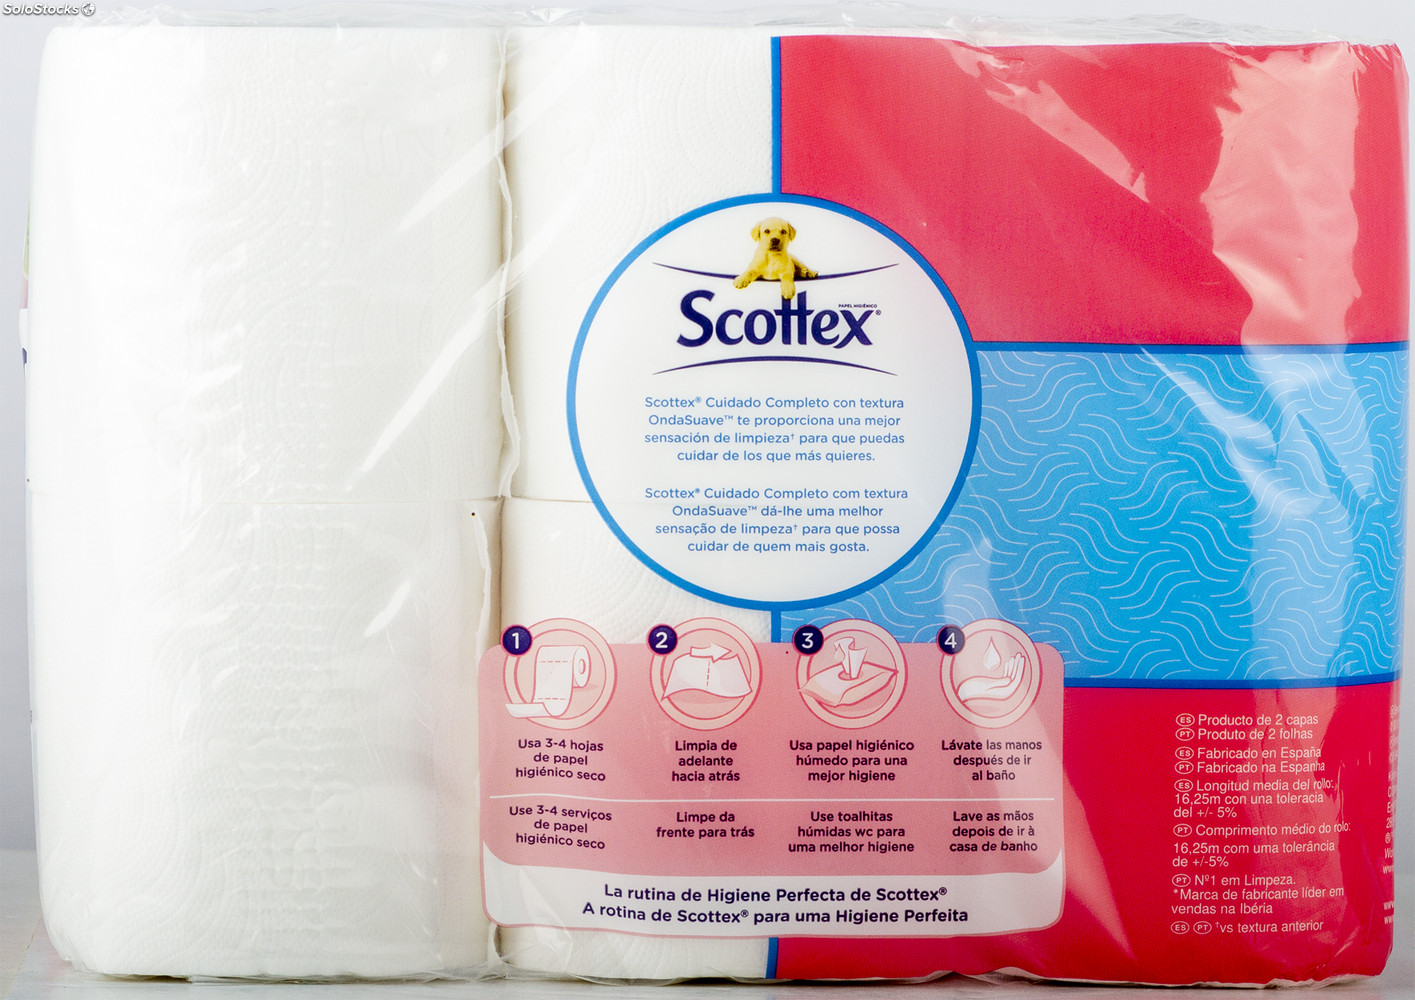 3 paquetes de 32 rollos de Scottex Acolchado Papel Higiénico (total 96  rollos)